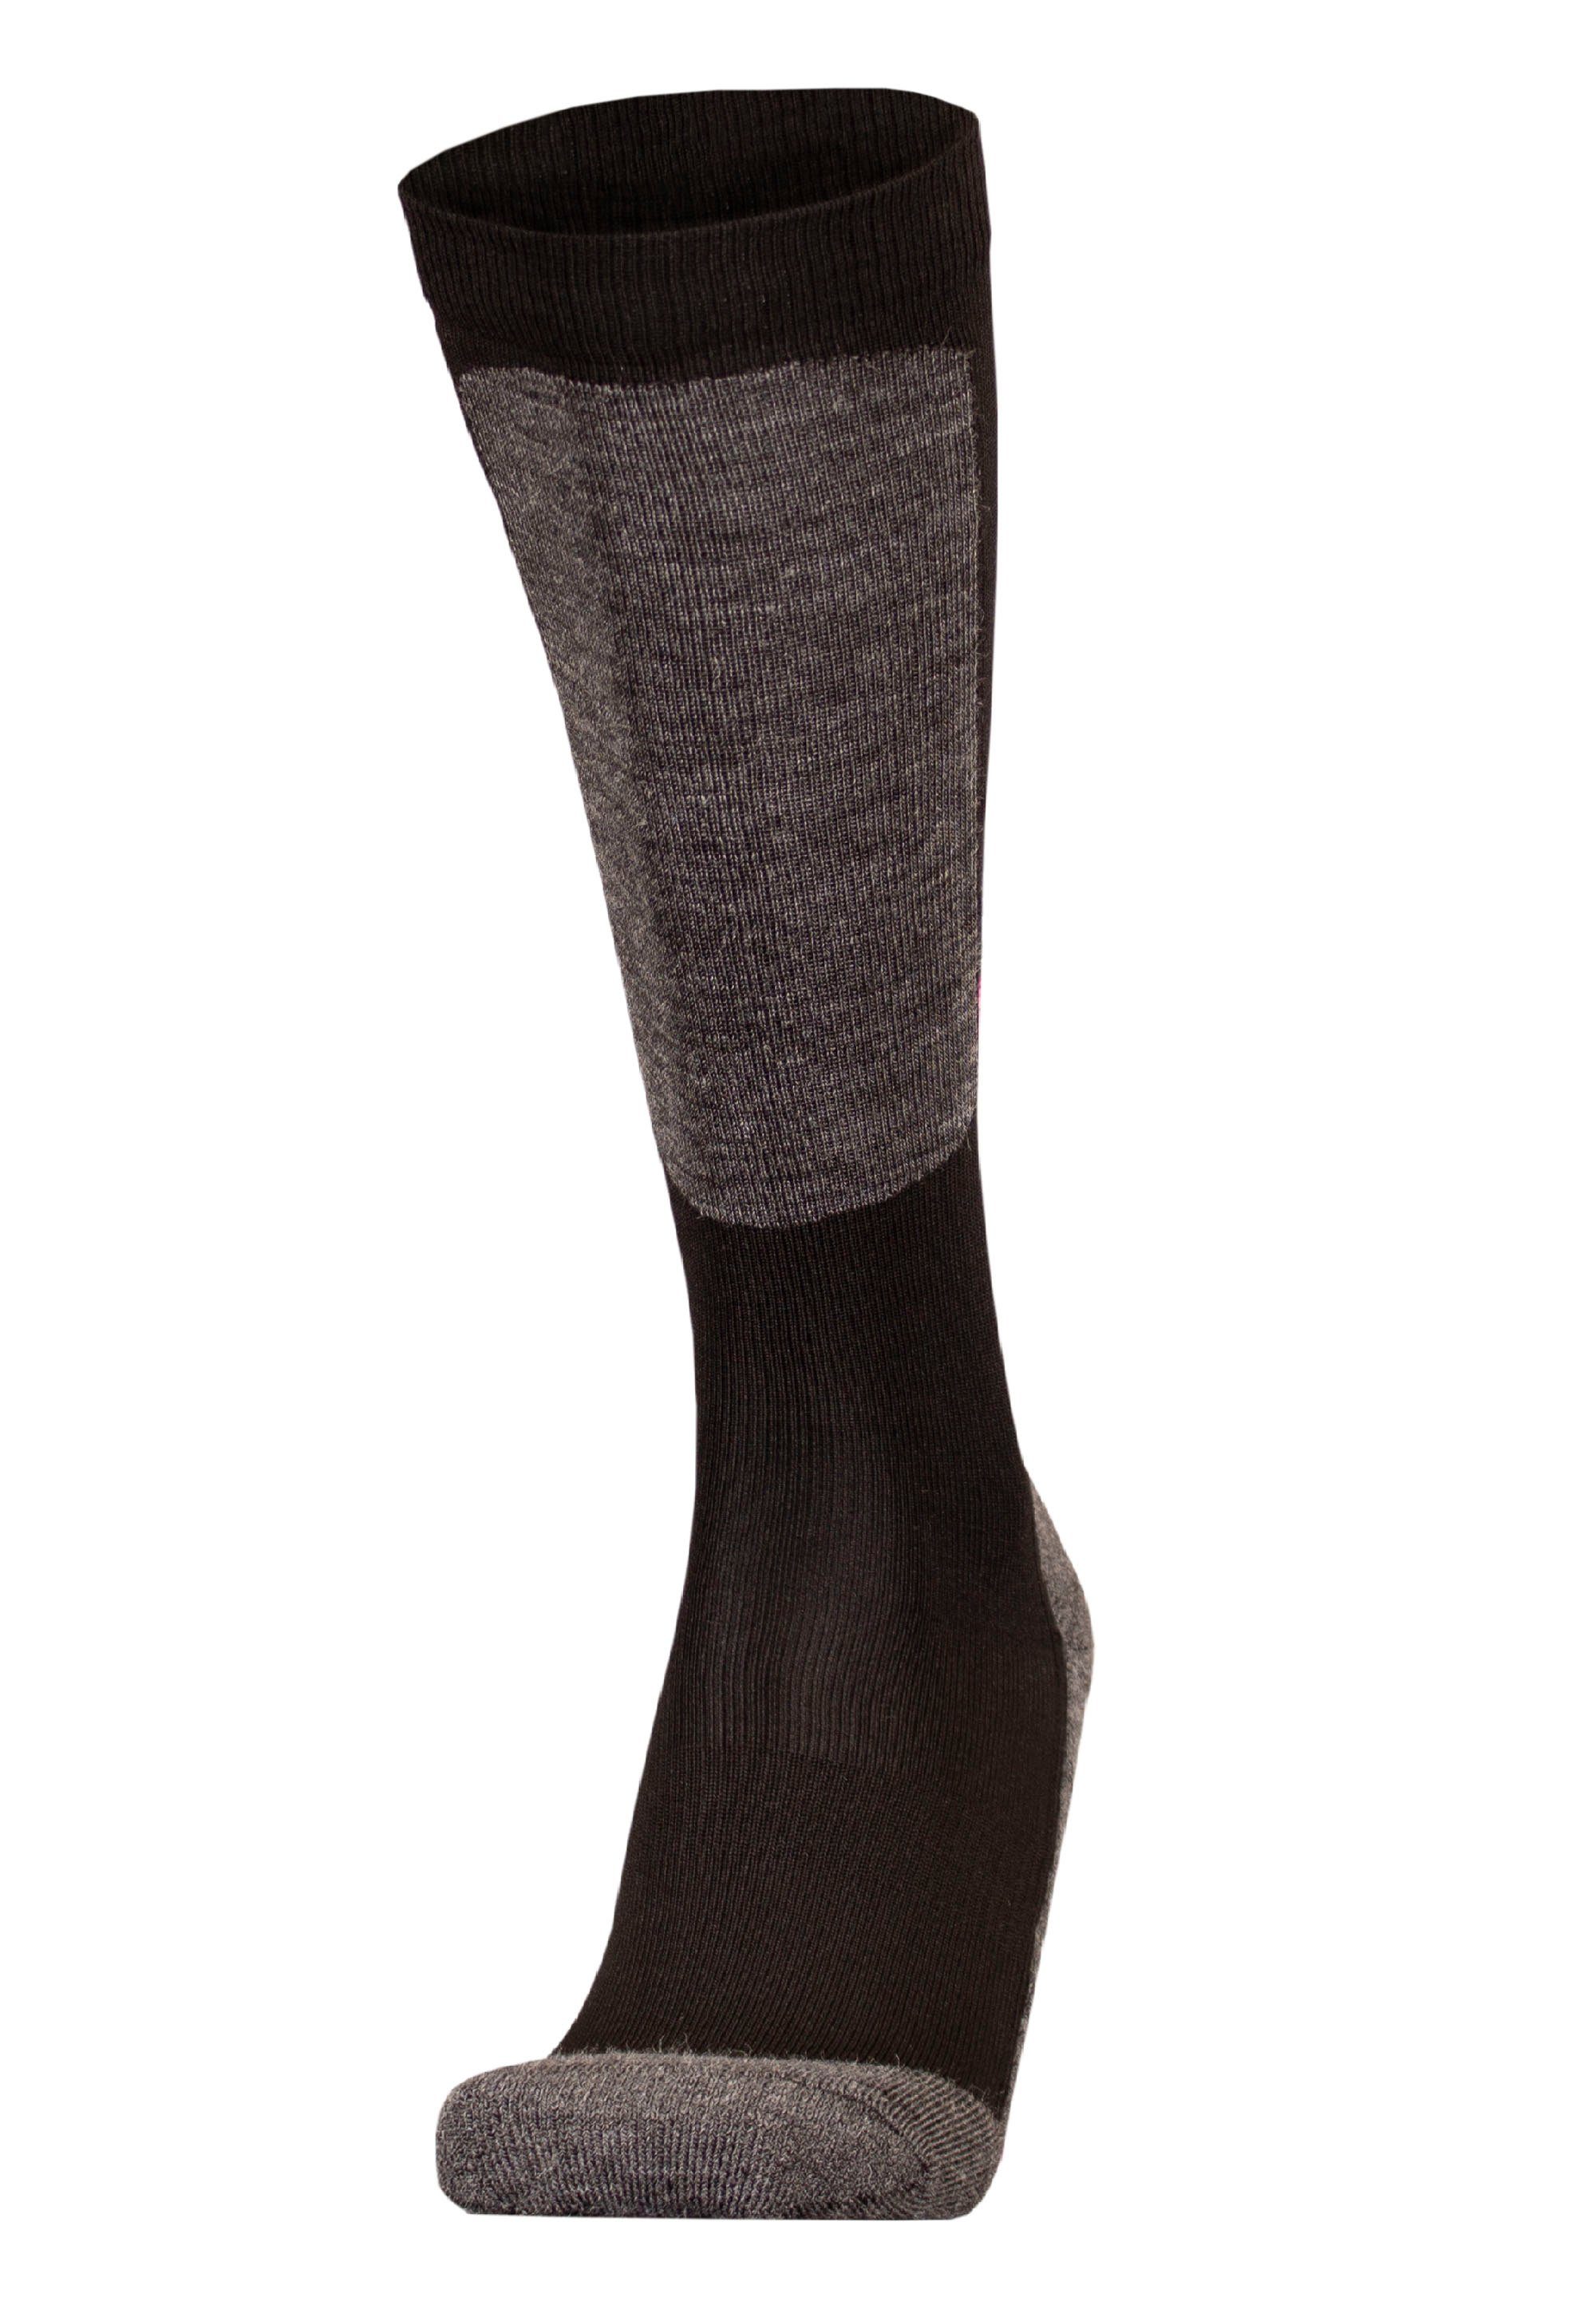 atmungsaktiver (1-Paar) Socken schwarz-pink HALLA mit Funktion UphillSport